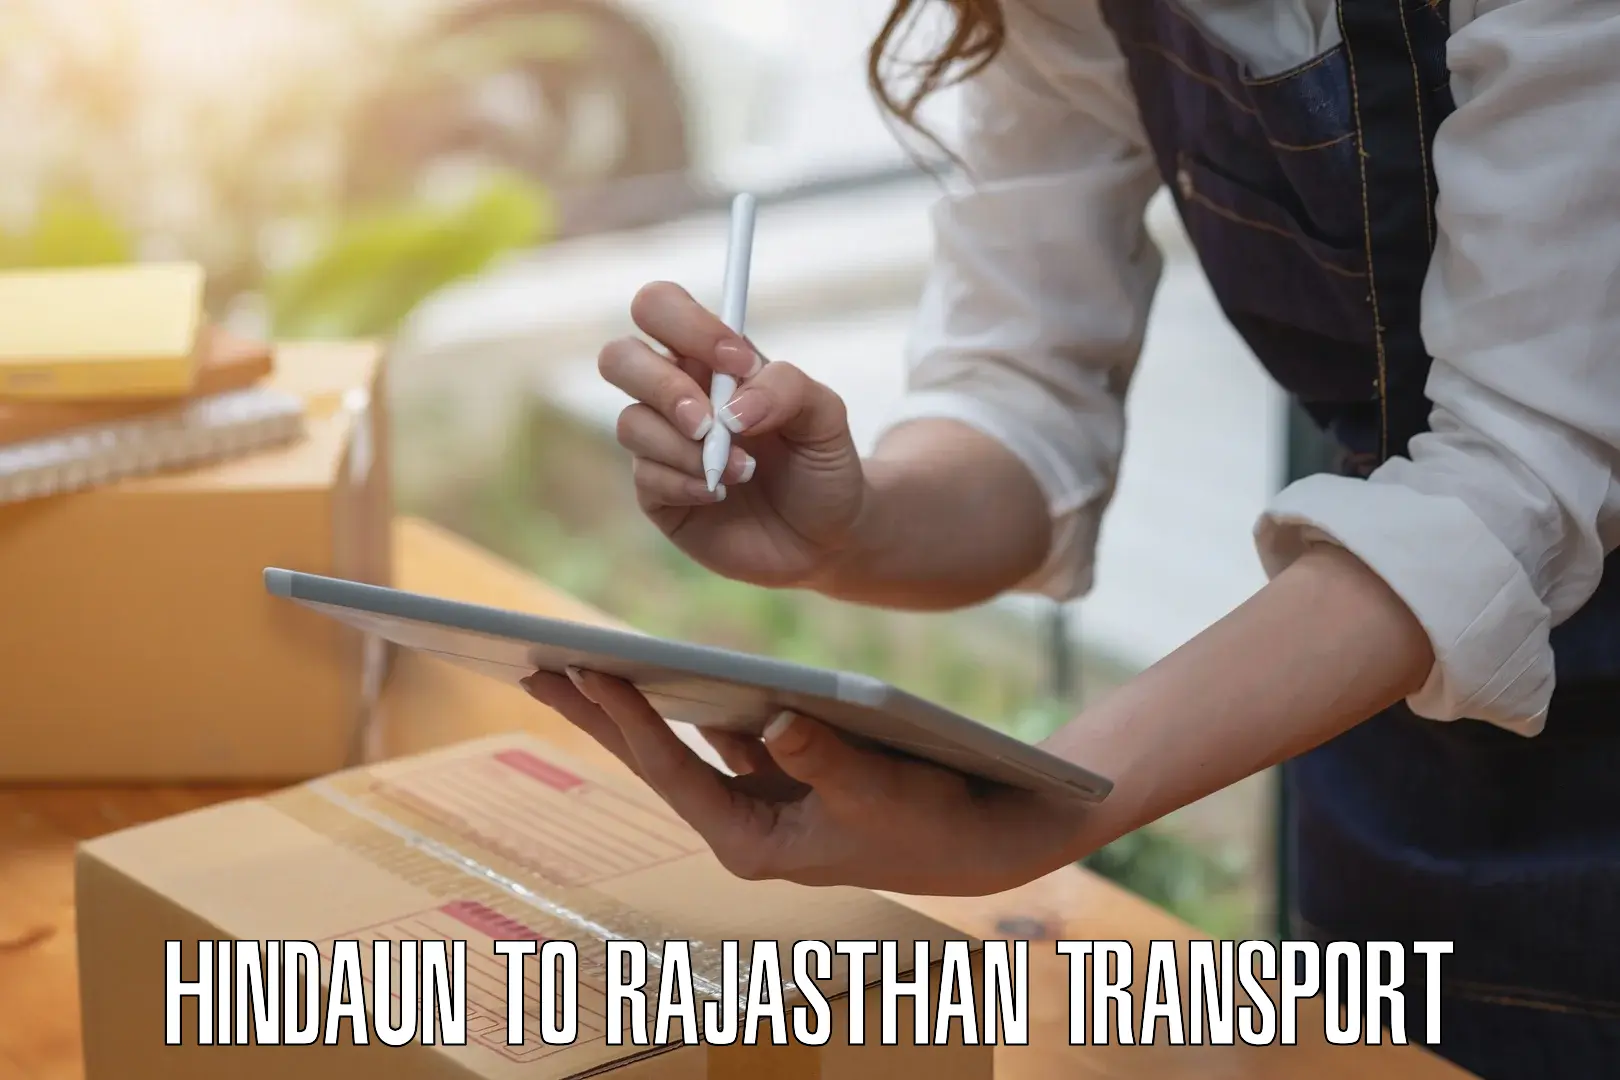 Transport in sharing Hindaun to Gotan